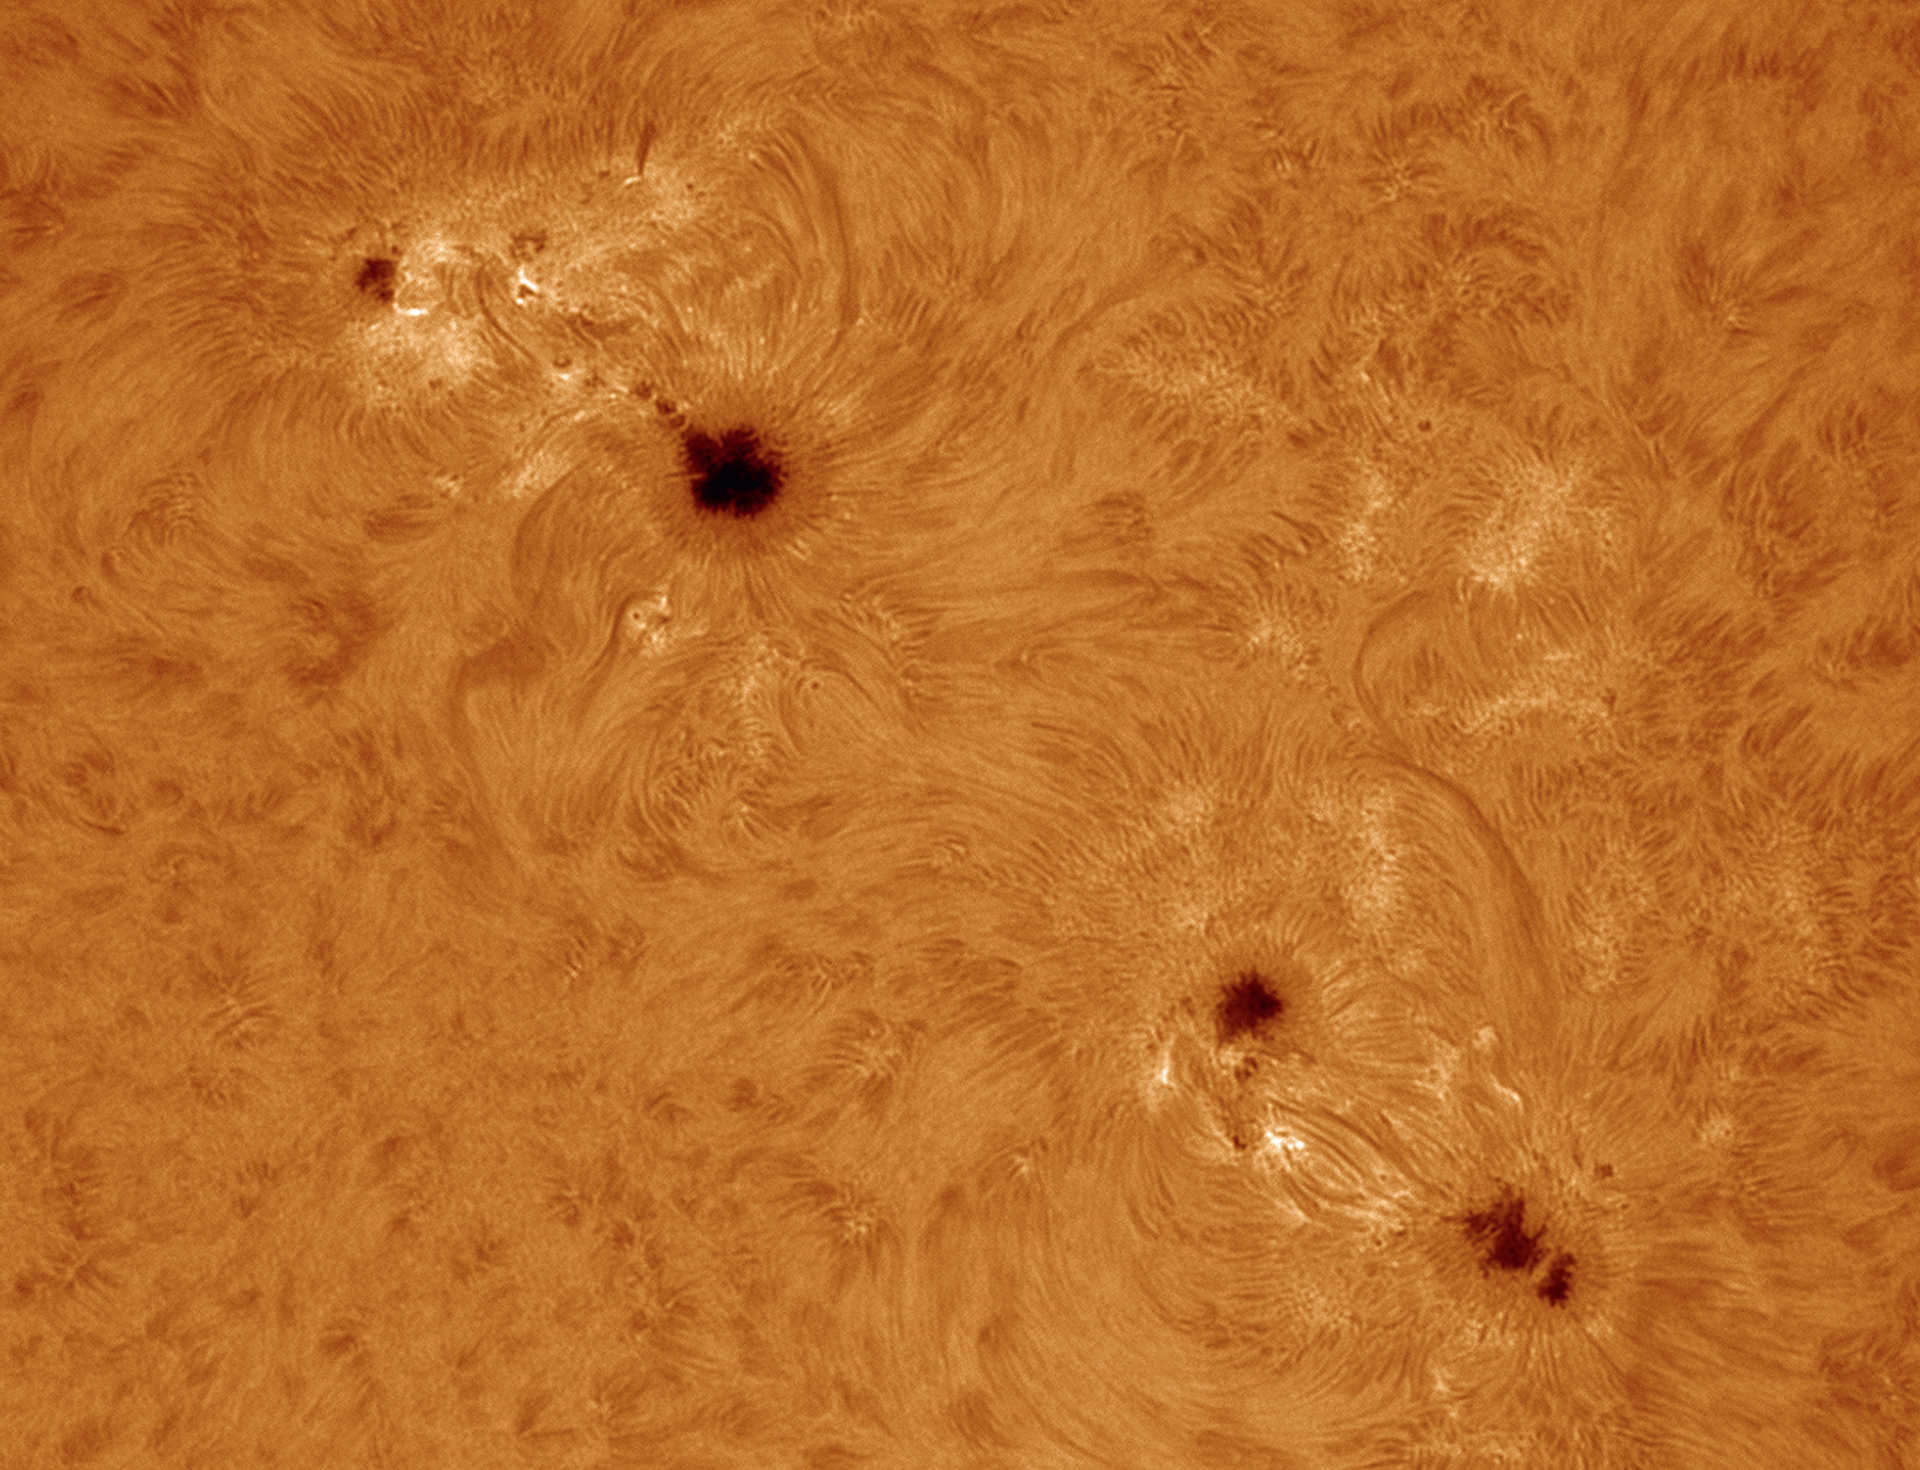 Solfläckar i Hα-ljus. Taget med ett Coronado Solarmax90-filter på en refraktor med brännvidd 2 000 mm, öppning: 90 mm; okyld
CCD-kamera; 500 av 2 500 enskilda bilder bearbetade i AviStack2 och Photoshop. U. Dittler